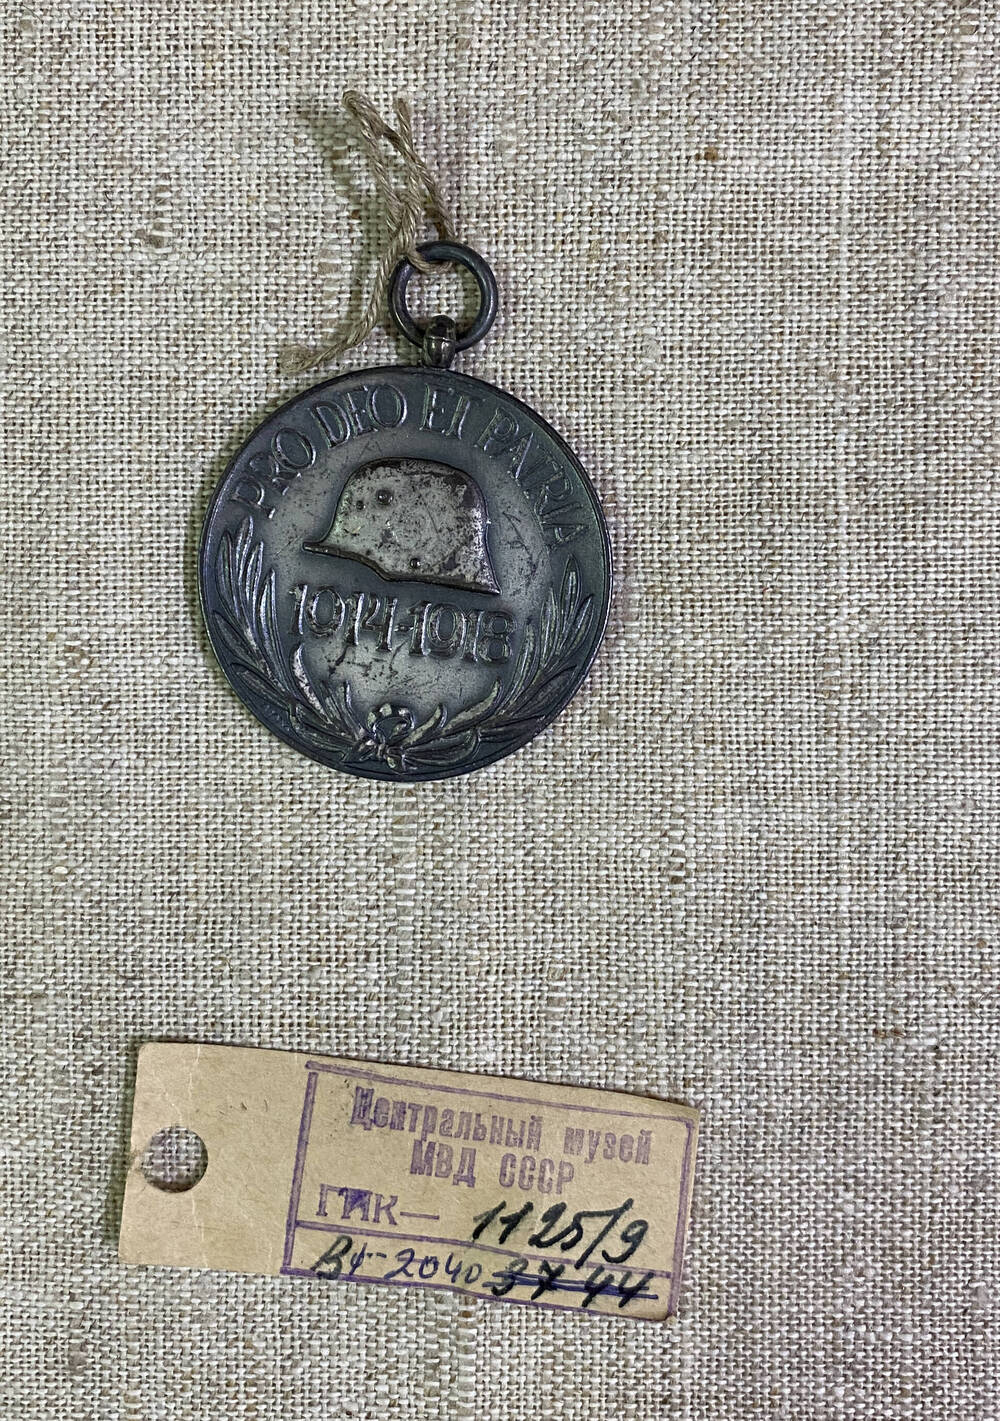 Медаль круглой формы Австро-Венгерской империи , на аверсе изображена каска и цифры 1914-1918, текст, на реверсе герб, корона и перекрещивающиеся мечи в обрамлении лавровых листьев